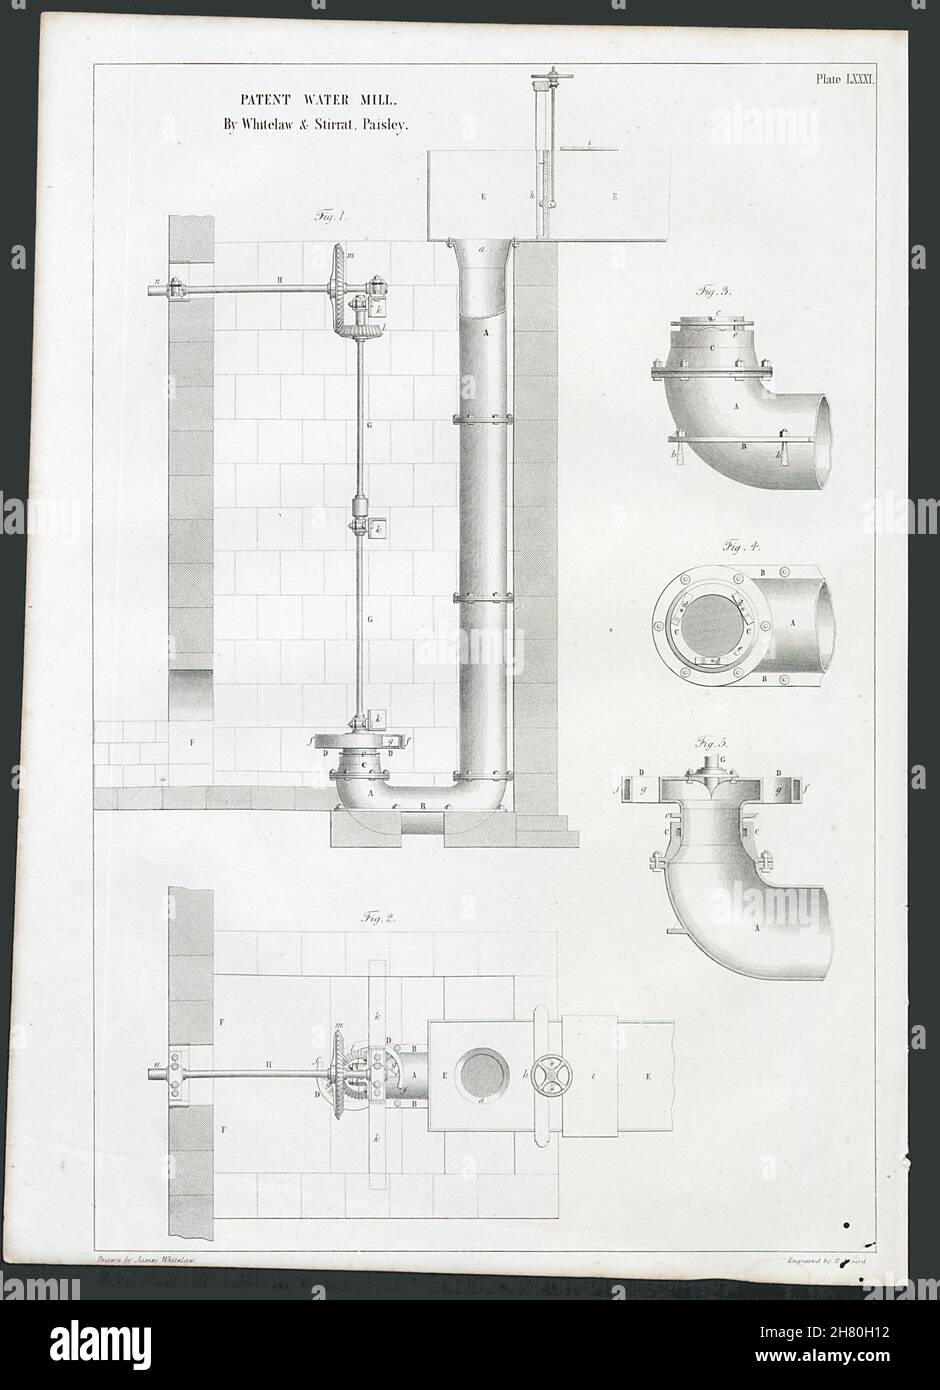 Dessin technique victorienne moulin à eau Brevet Whitelaw & Stirrat Paisley 1847 Banque D'Images